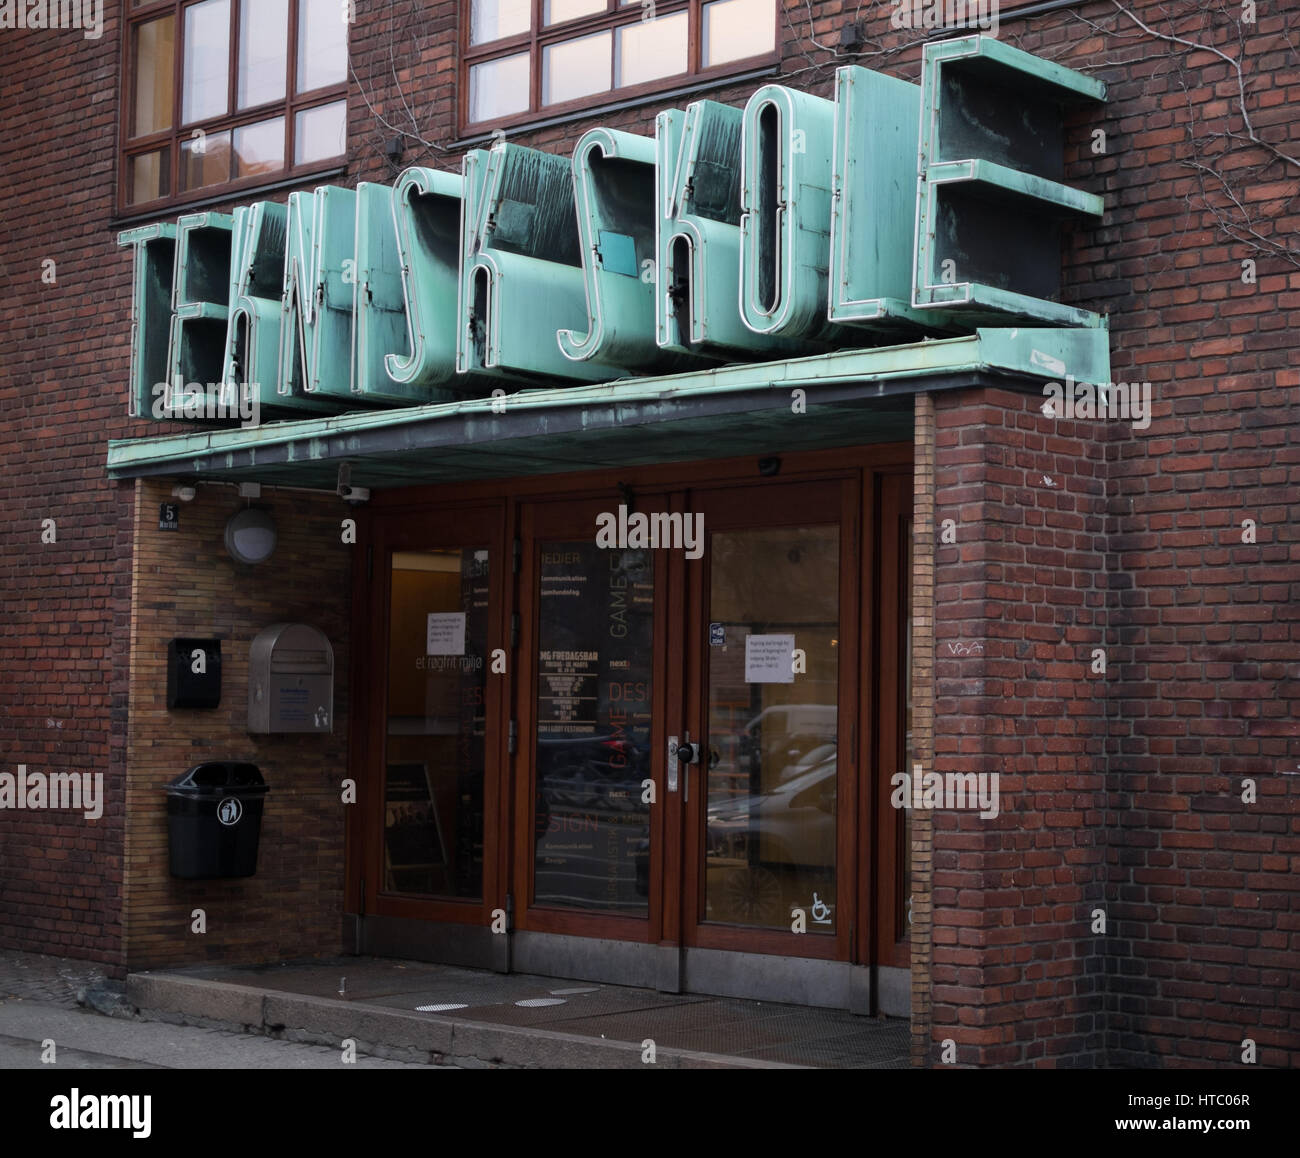 Teknisk Skole 3D sign, Copenhagen, Denmark Stock Photo